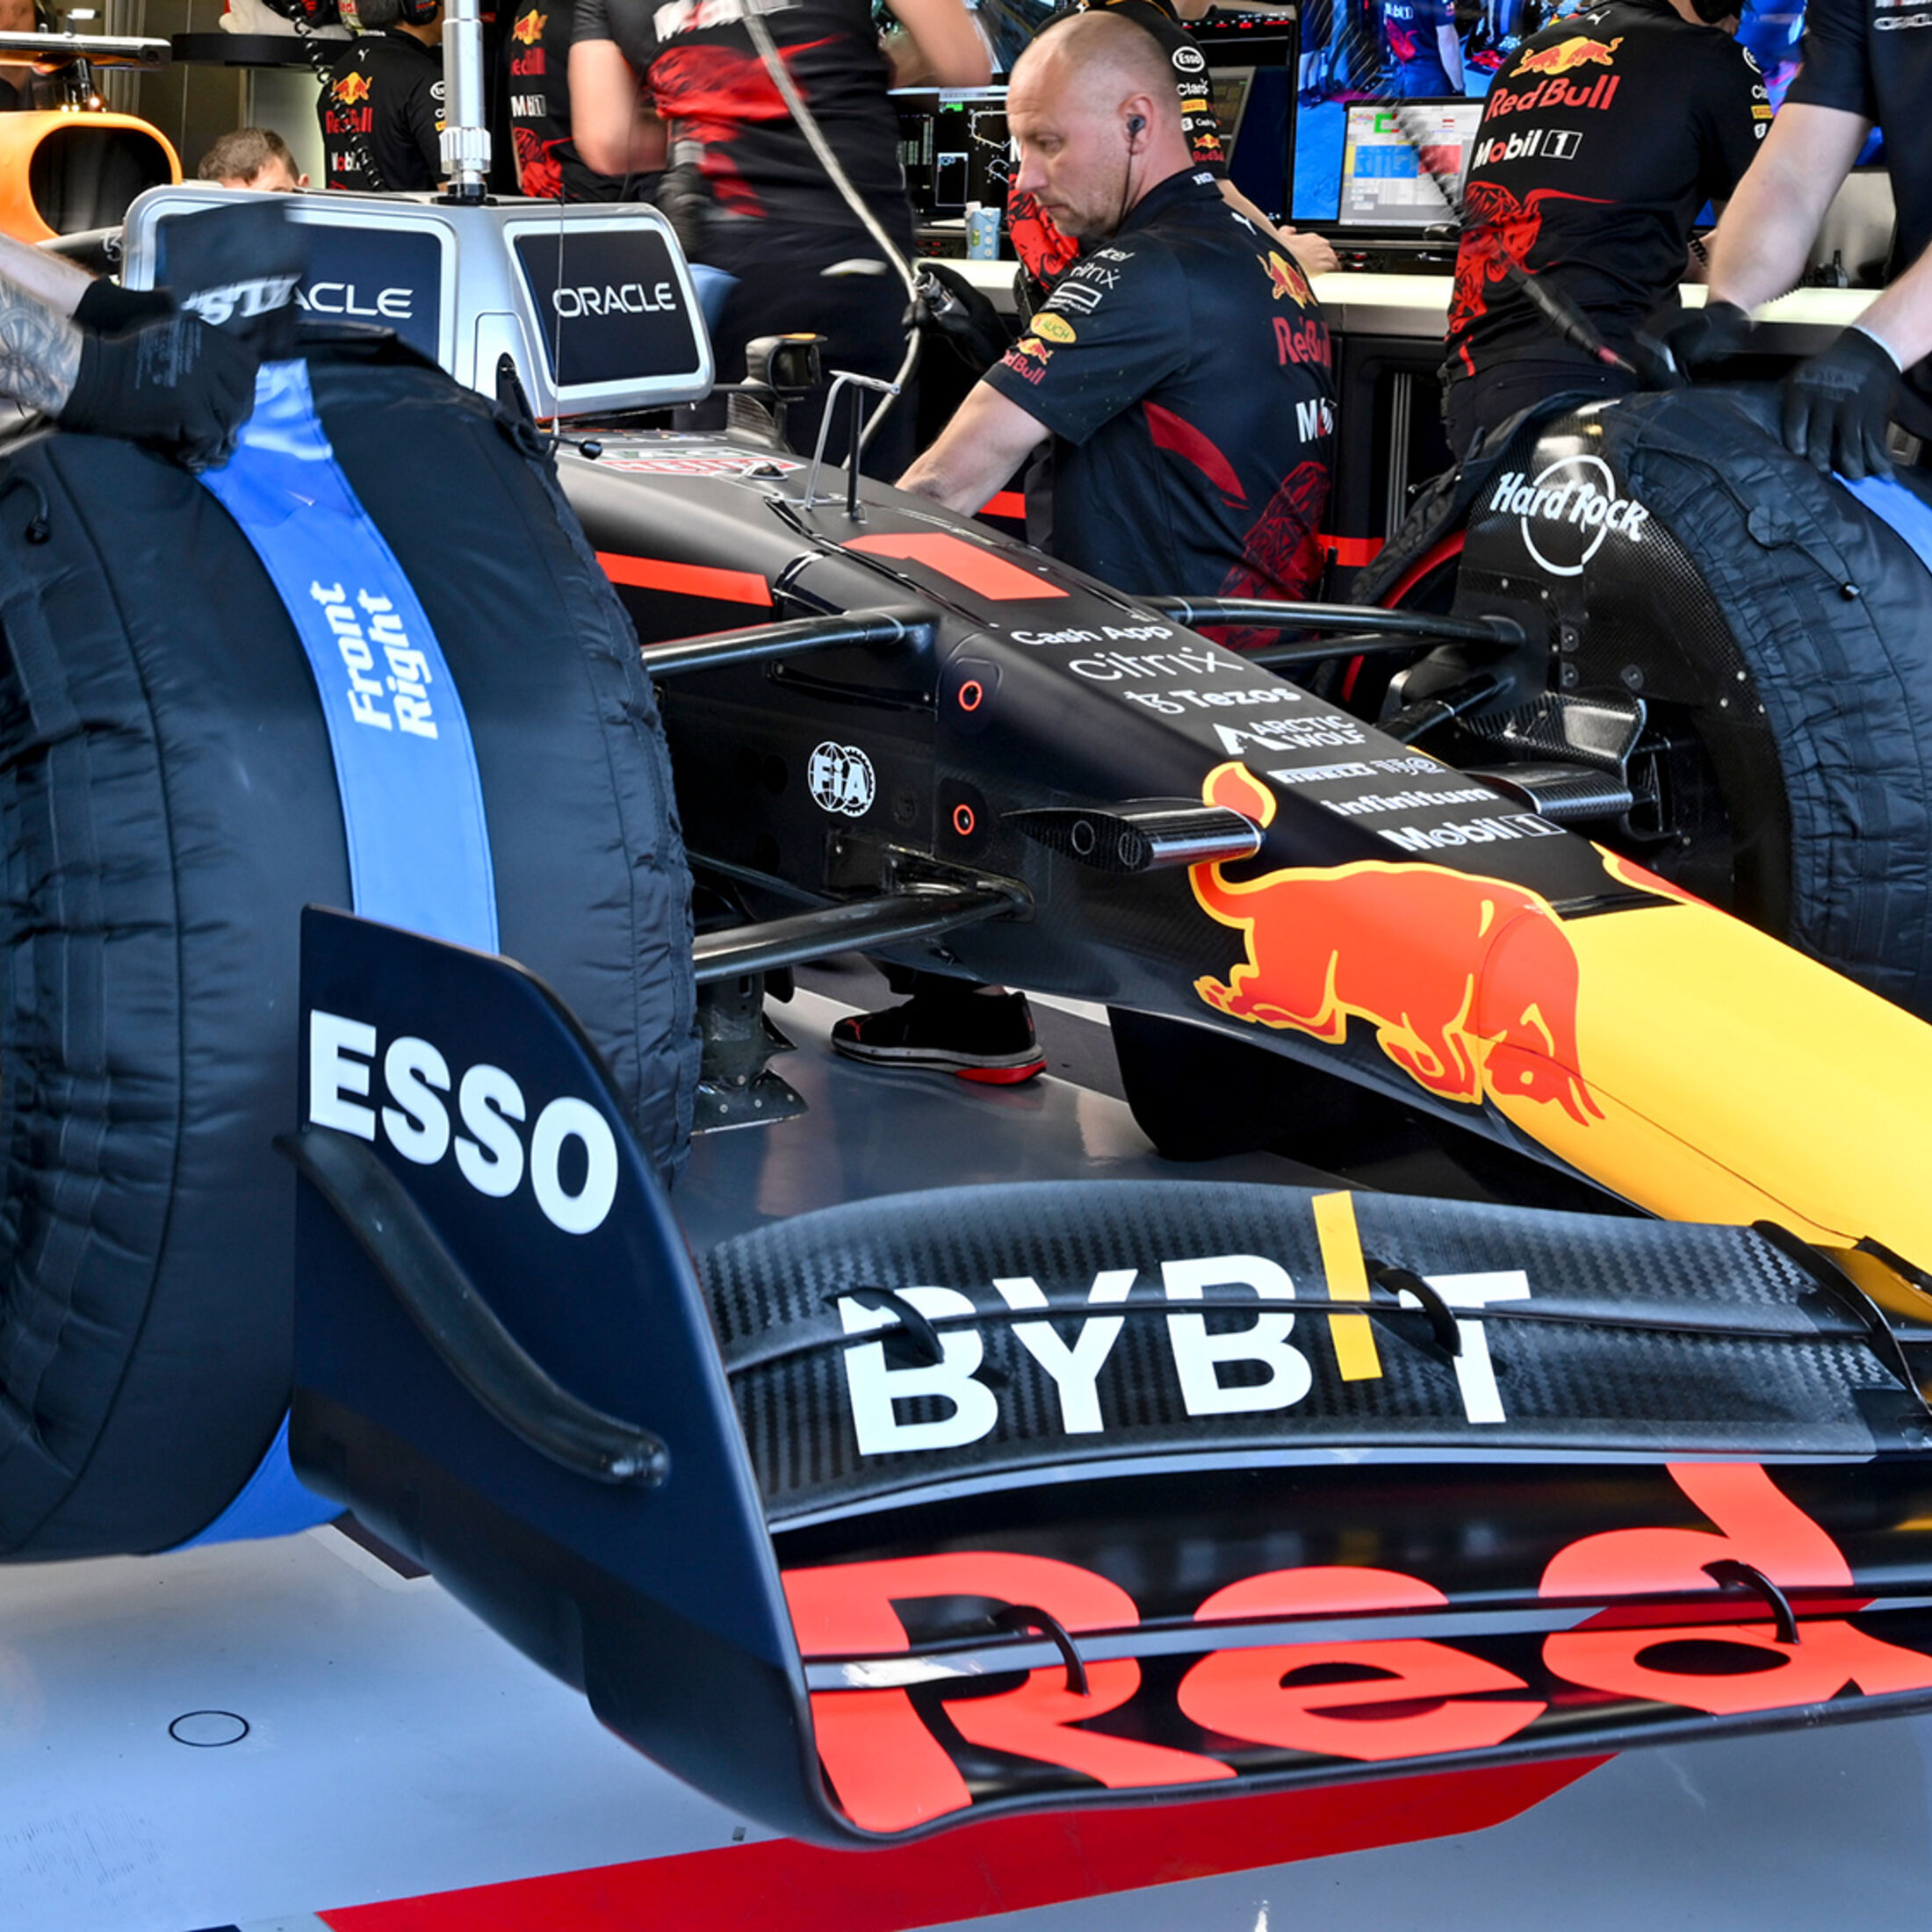 Heizdecken-Verbot 2024: Pirelli baut neue F1-Reifen